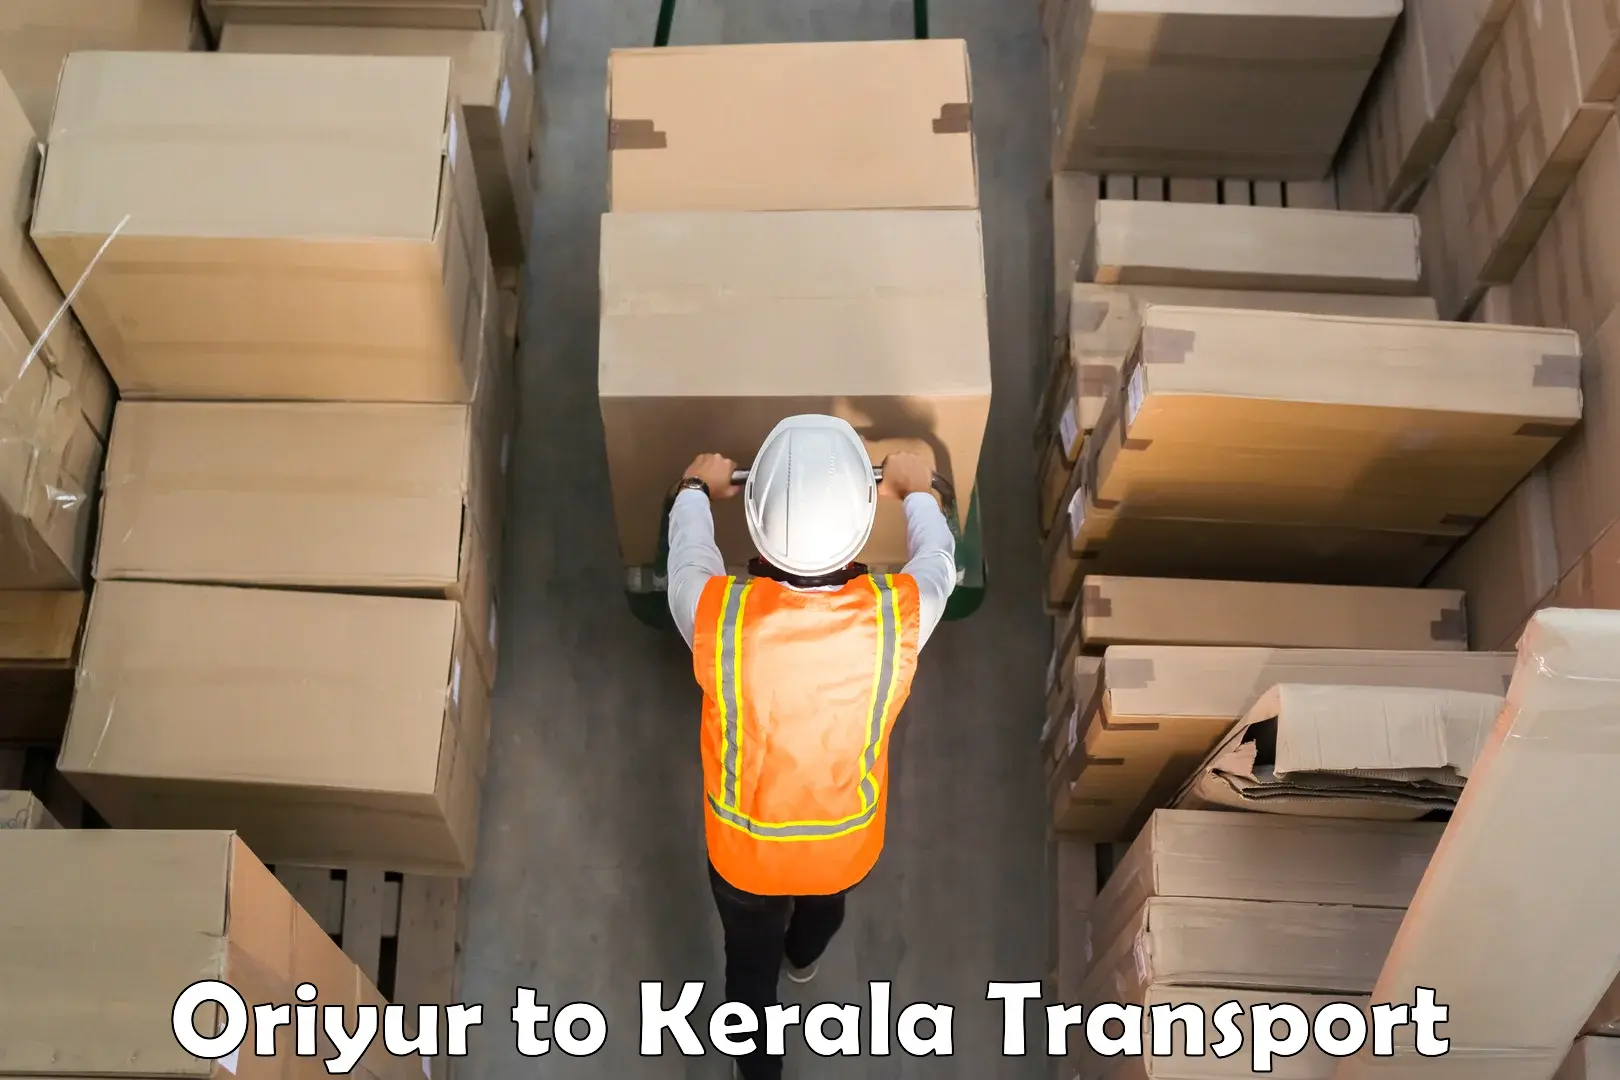 Road transport online services Oriyur to Mundakayam